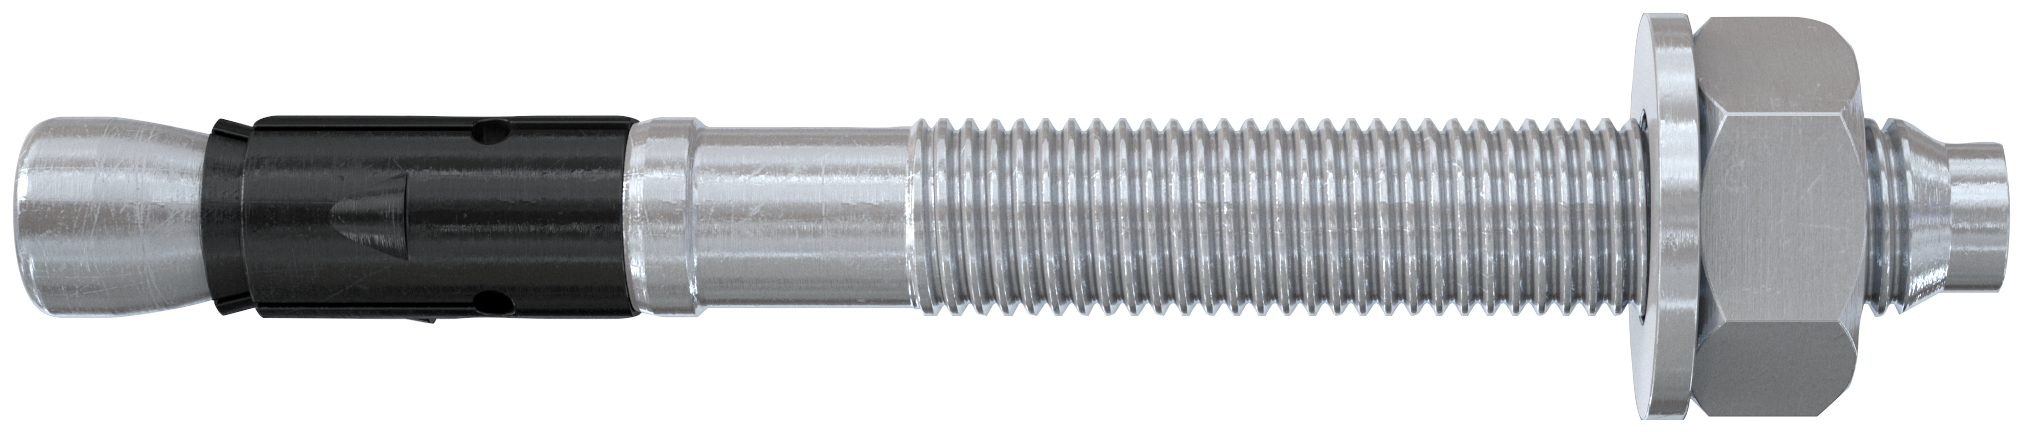 fischer Tassello acciaio FAZ II 10-160 (20 Pz.) L'ancorante ad espansione ad alte prestazioni per carichi statici su calcestruzzo fessurato e per applicazioni sismiche. Versione in acciaio zincato. fie1576